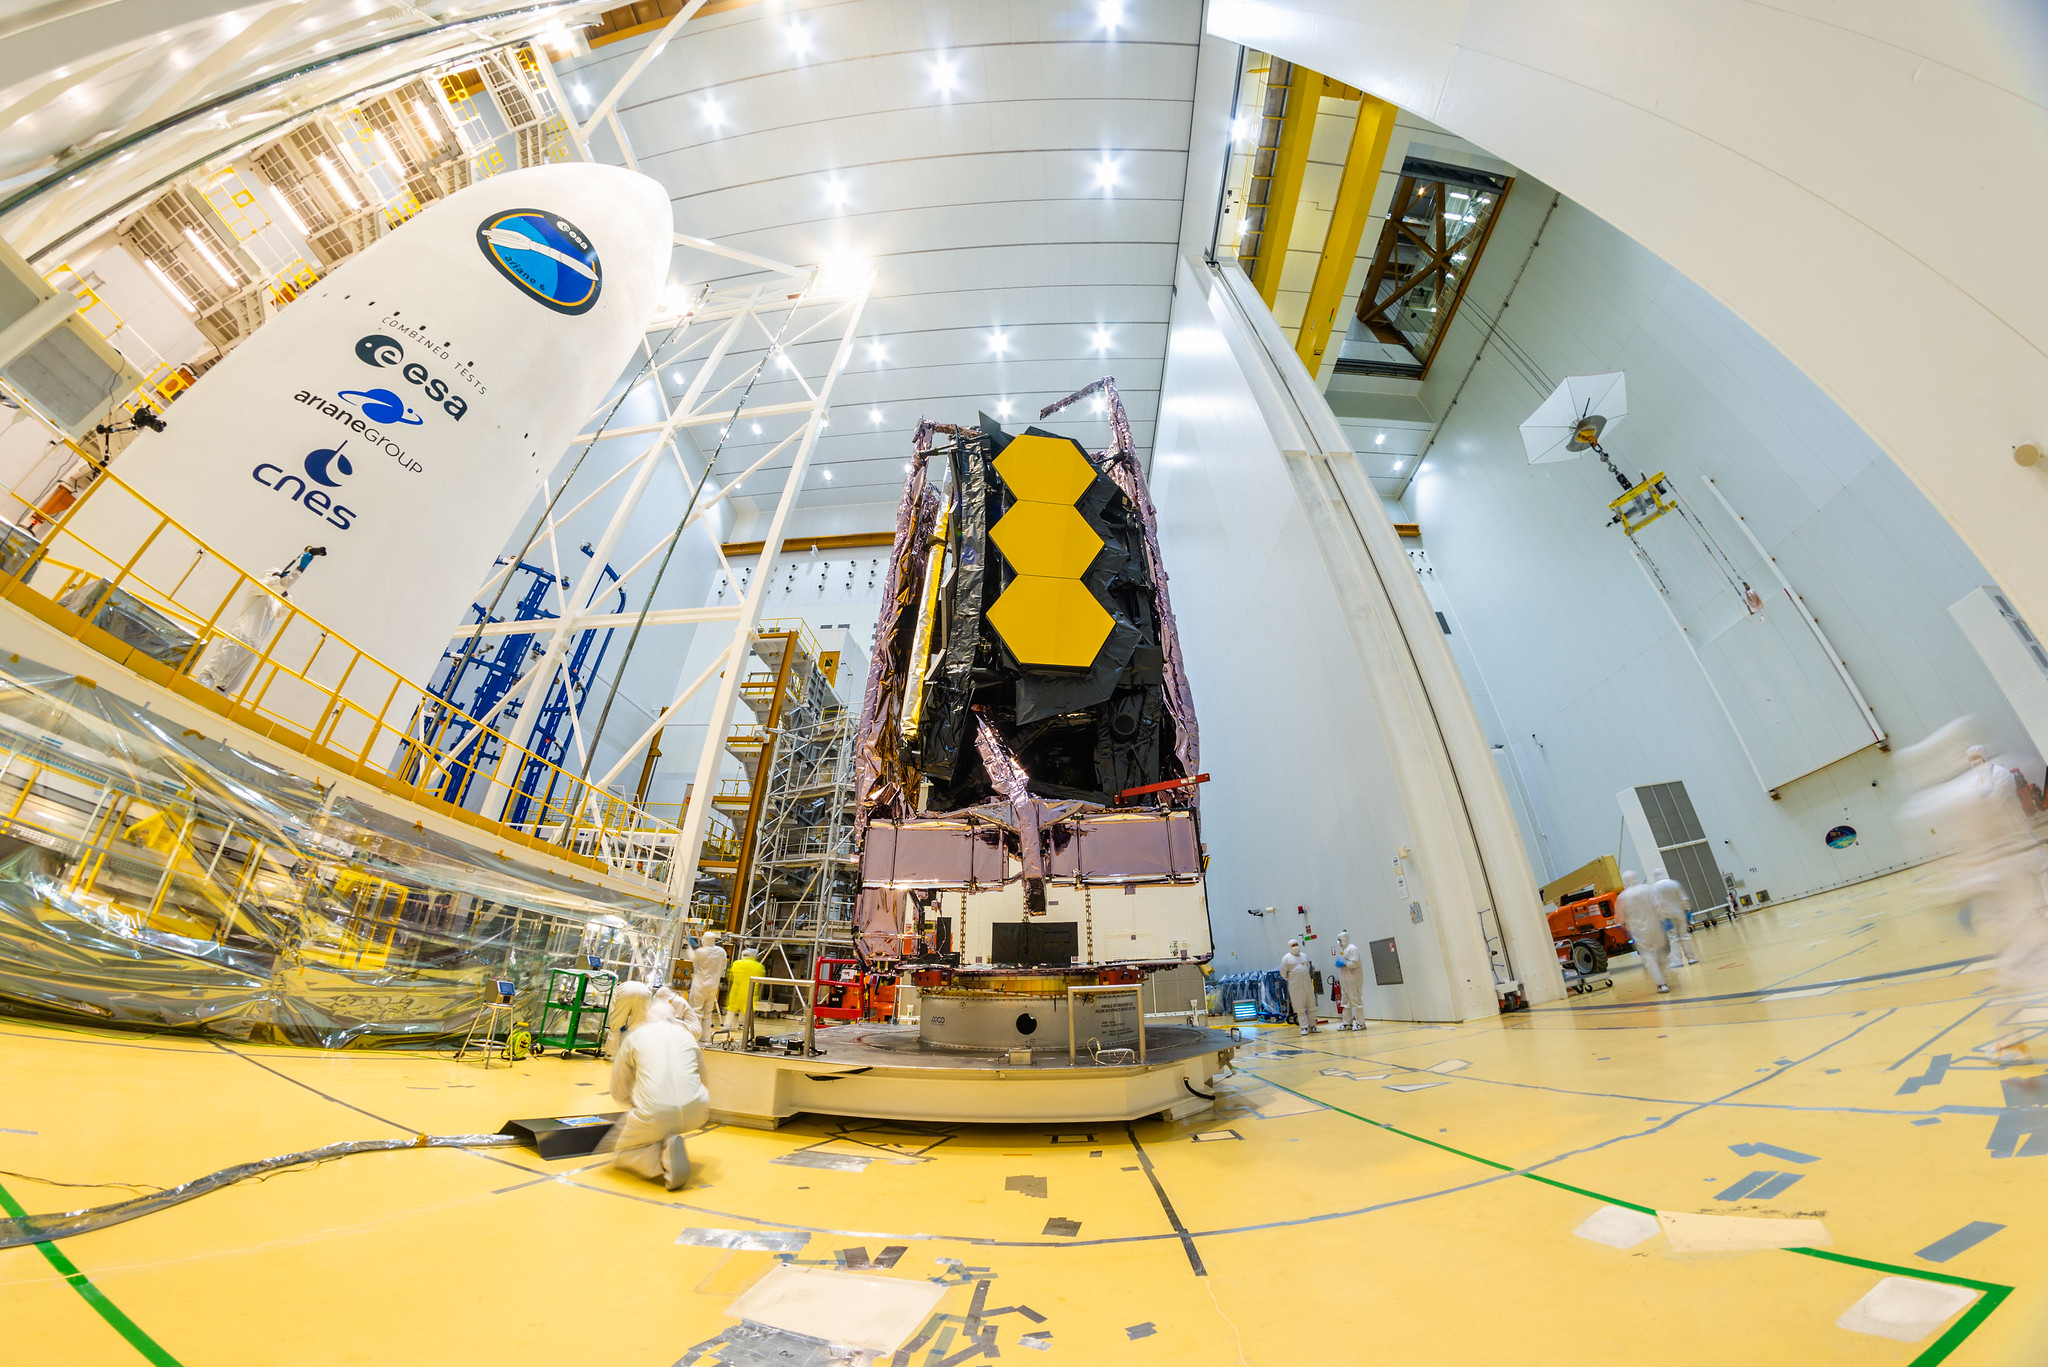 W sobotę, 11 grudnia, Kosmiczny Teleskop Jamesa Webba został zauważony na szczycie rakiety Ariane 5 wystrzelonej w kosmos z europejskiego kosmodromu w Gujanie Francuskiej.